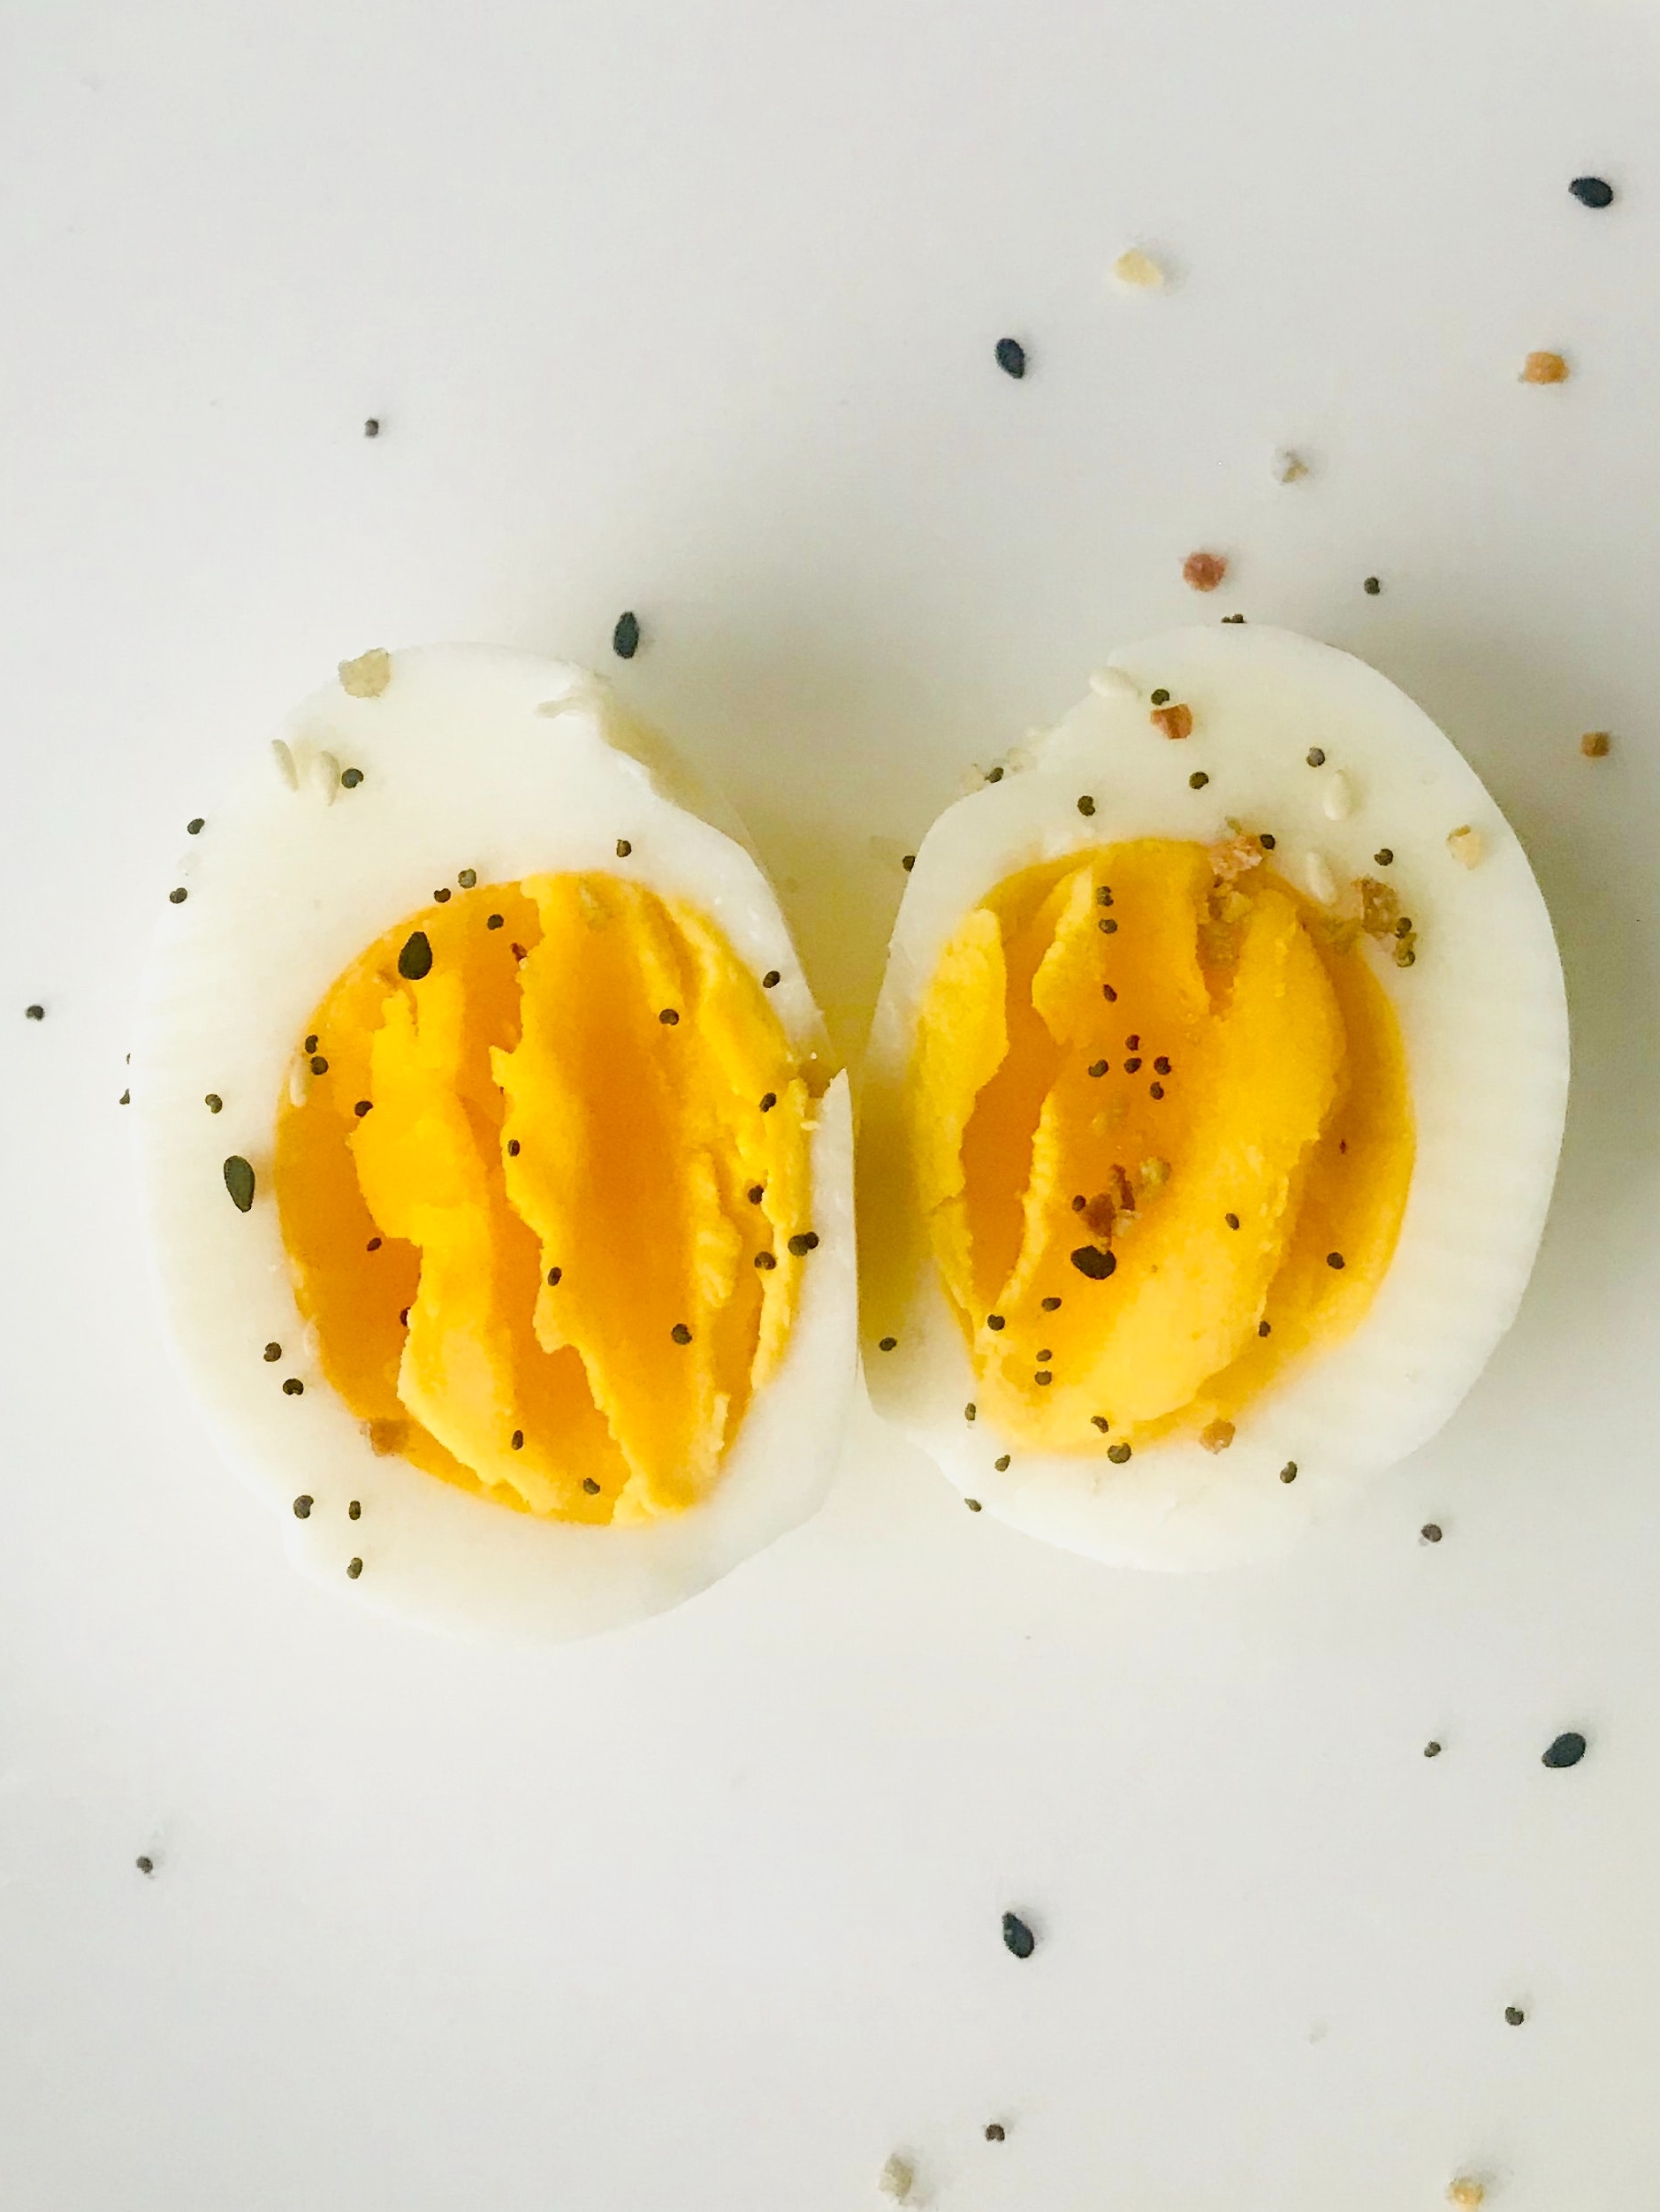 par boiled eggs
